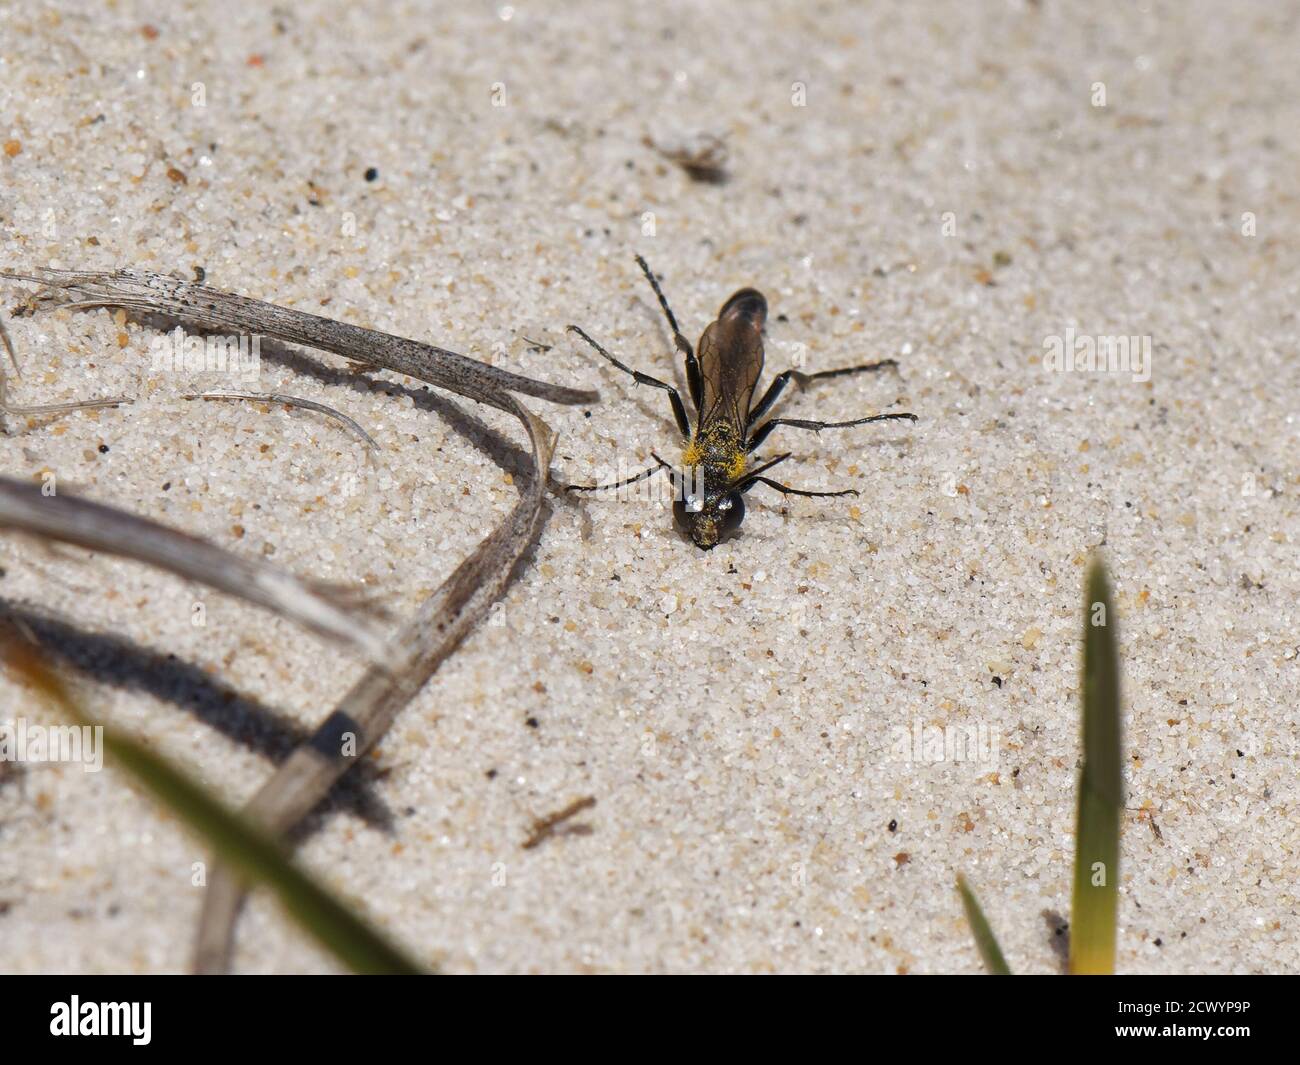 Heath Sand Wasp (Ammophila pubescens) prendere il sole sulle dune di sabbia sotto il sole caldo e sollevare le gambe, Dorset Heathland, Regno Unito, maggio. Foto Stock